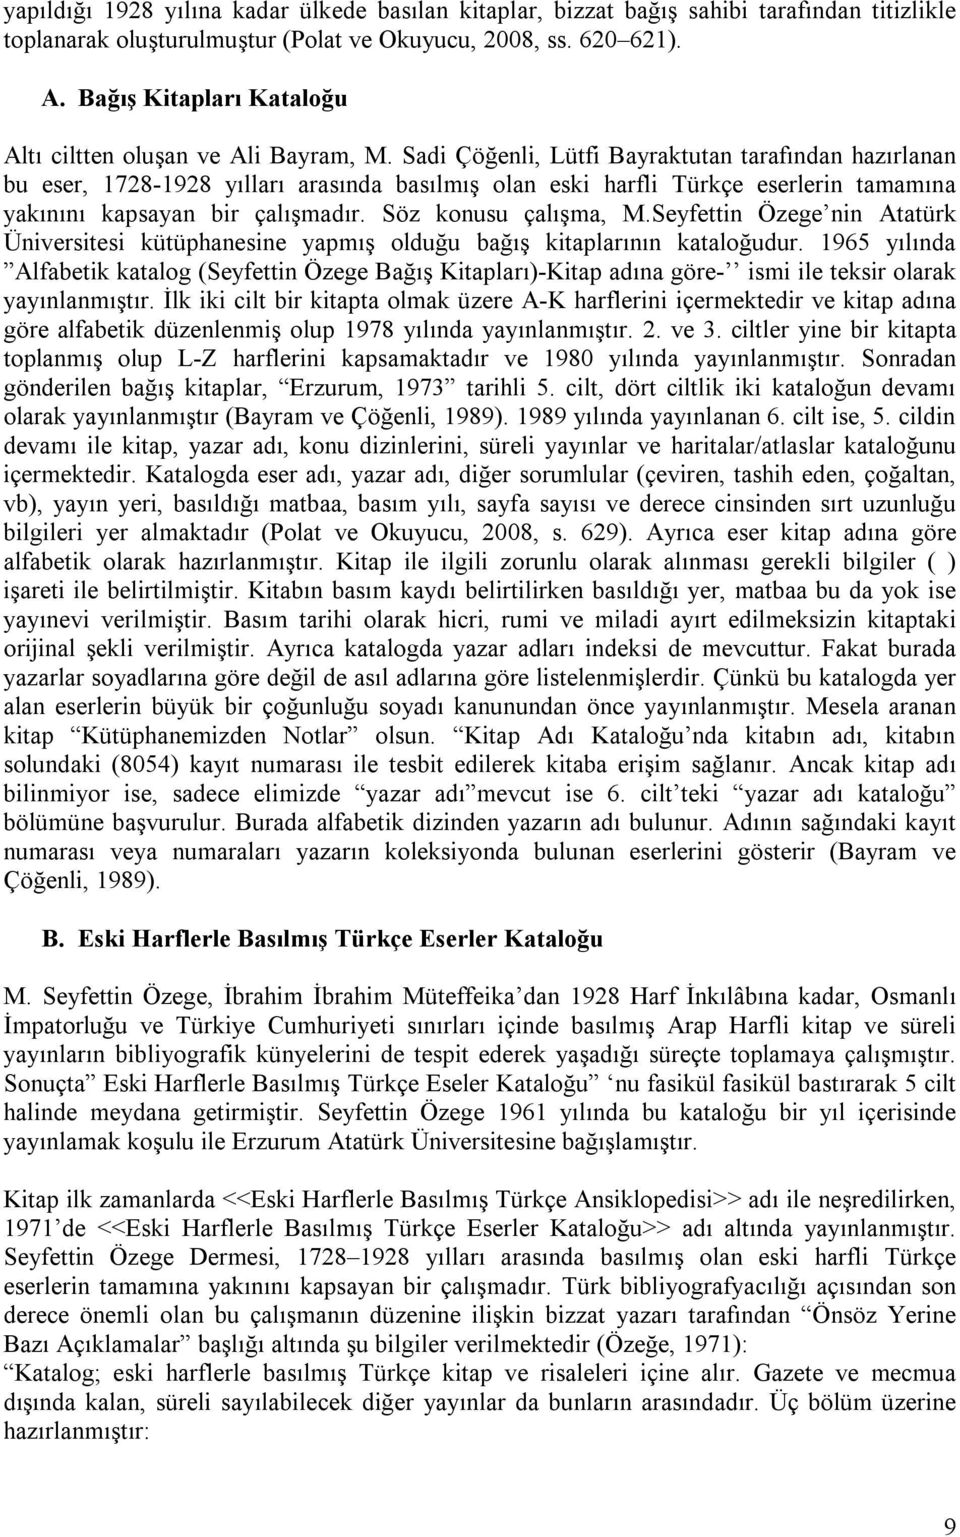 Sadi Çöğenli, Lütfi Bayraktutan tarafından hazırlanan bu eser, 1728-1928 yılları arasında basılmış olan eski harfli Türkçe eserlerin tamamına yakınını kapsayan bir çalışmadır. Söz konusu çalışma, M.